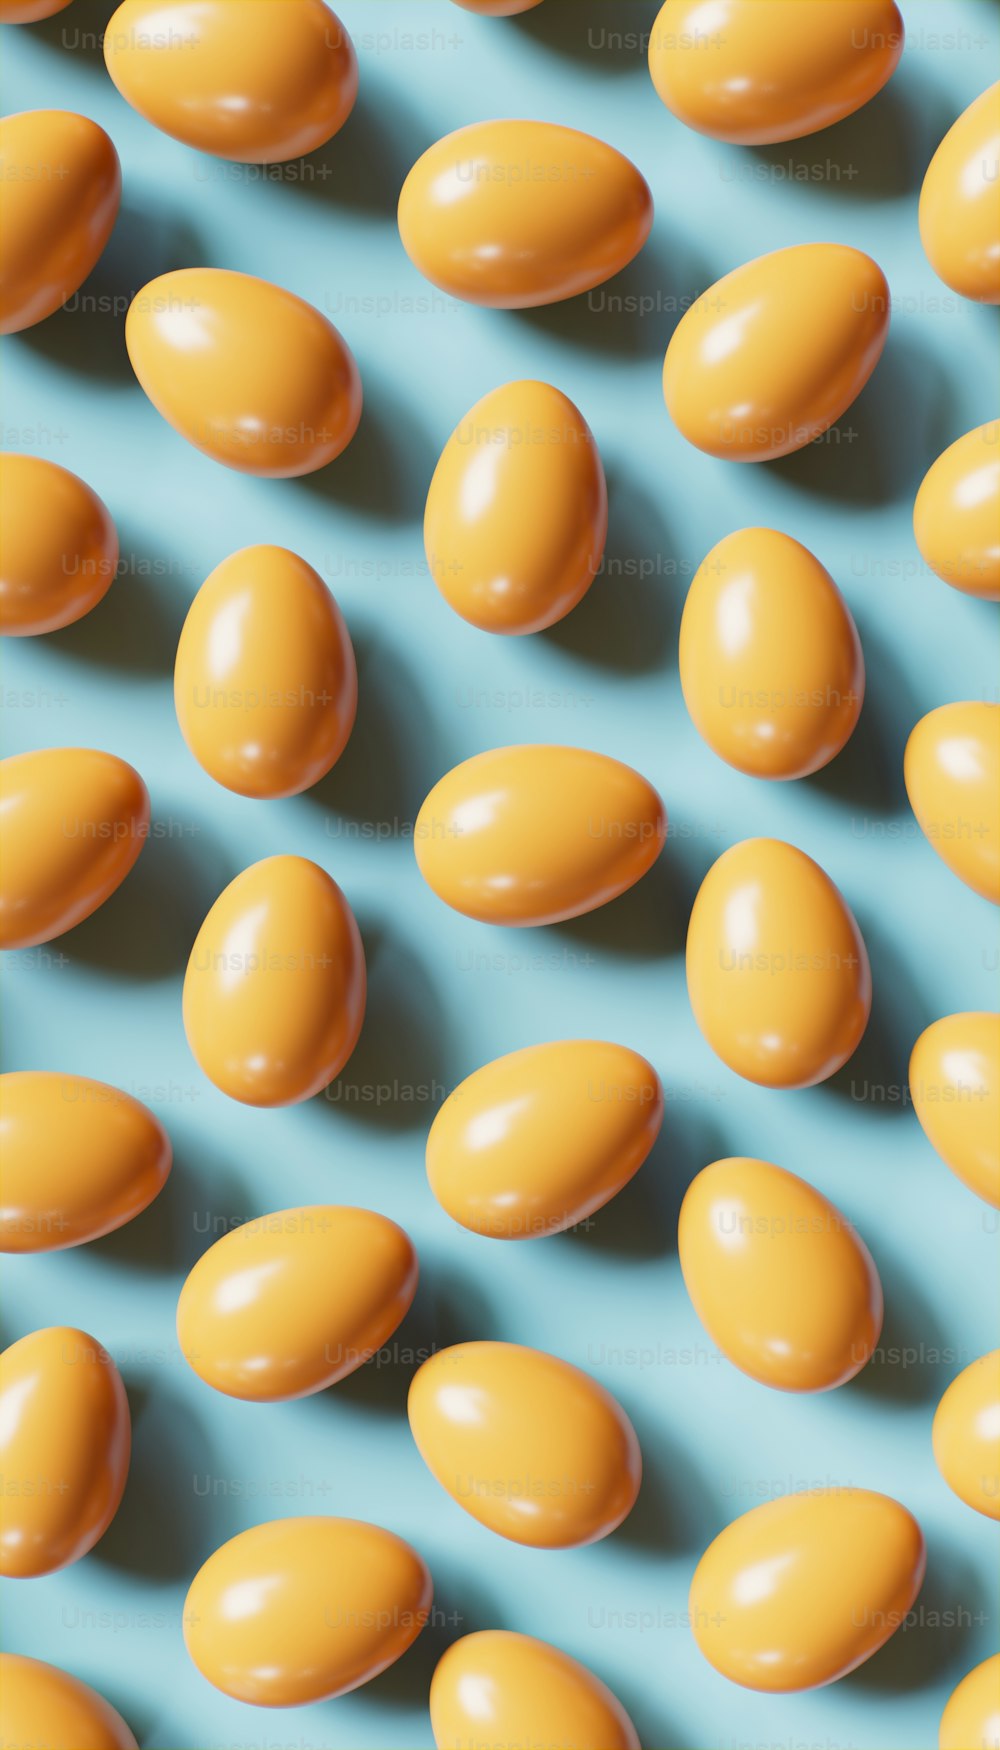 파란 표면 위에 앉아 있는 노란 달걀 다발